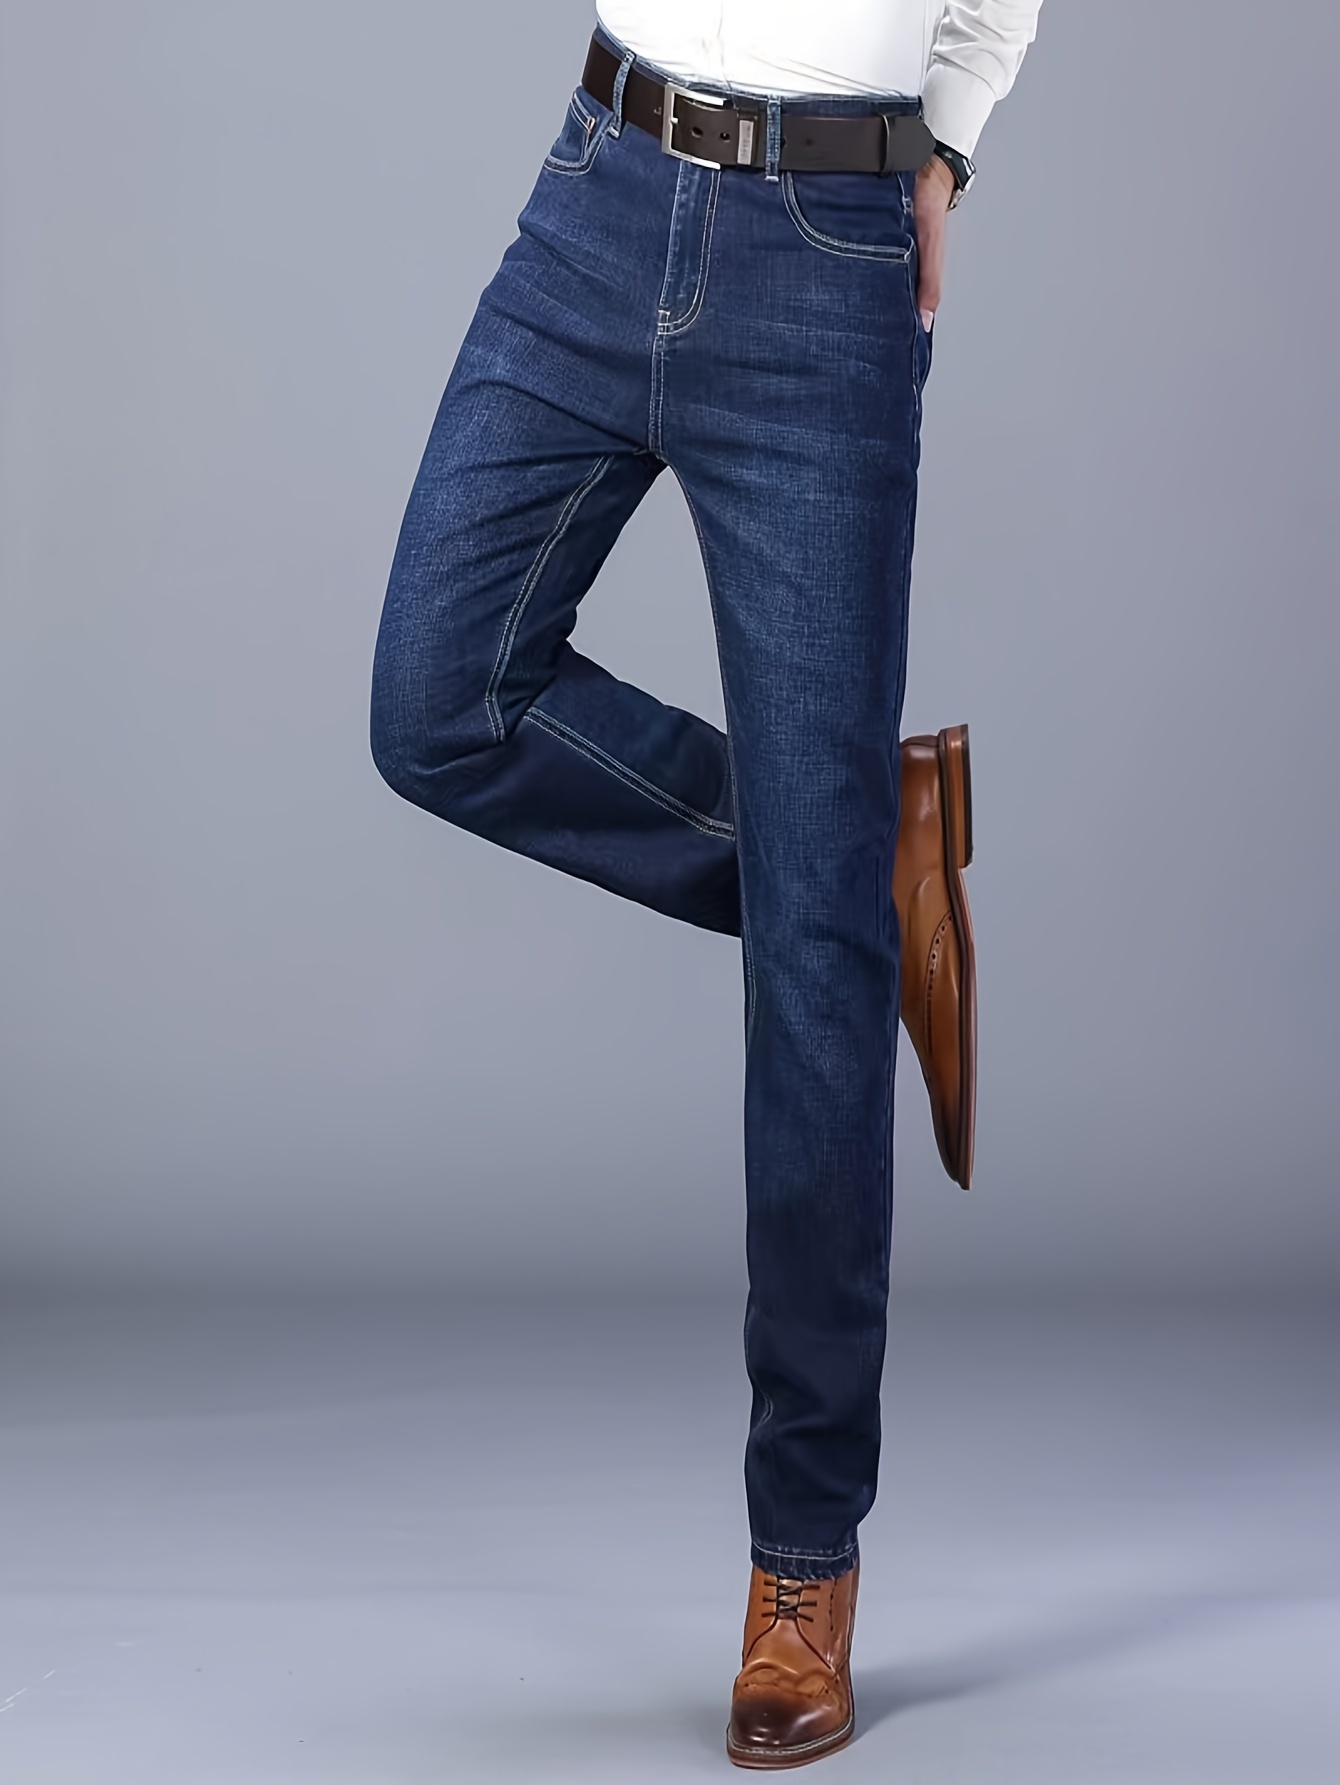 Men's Semi formal Jeans Chic Classic Design Denim Pants - Temu